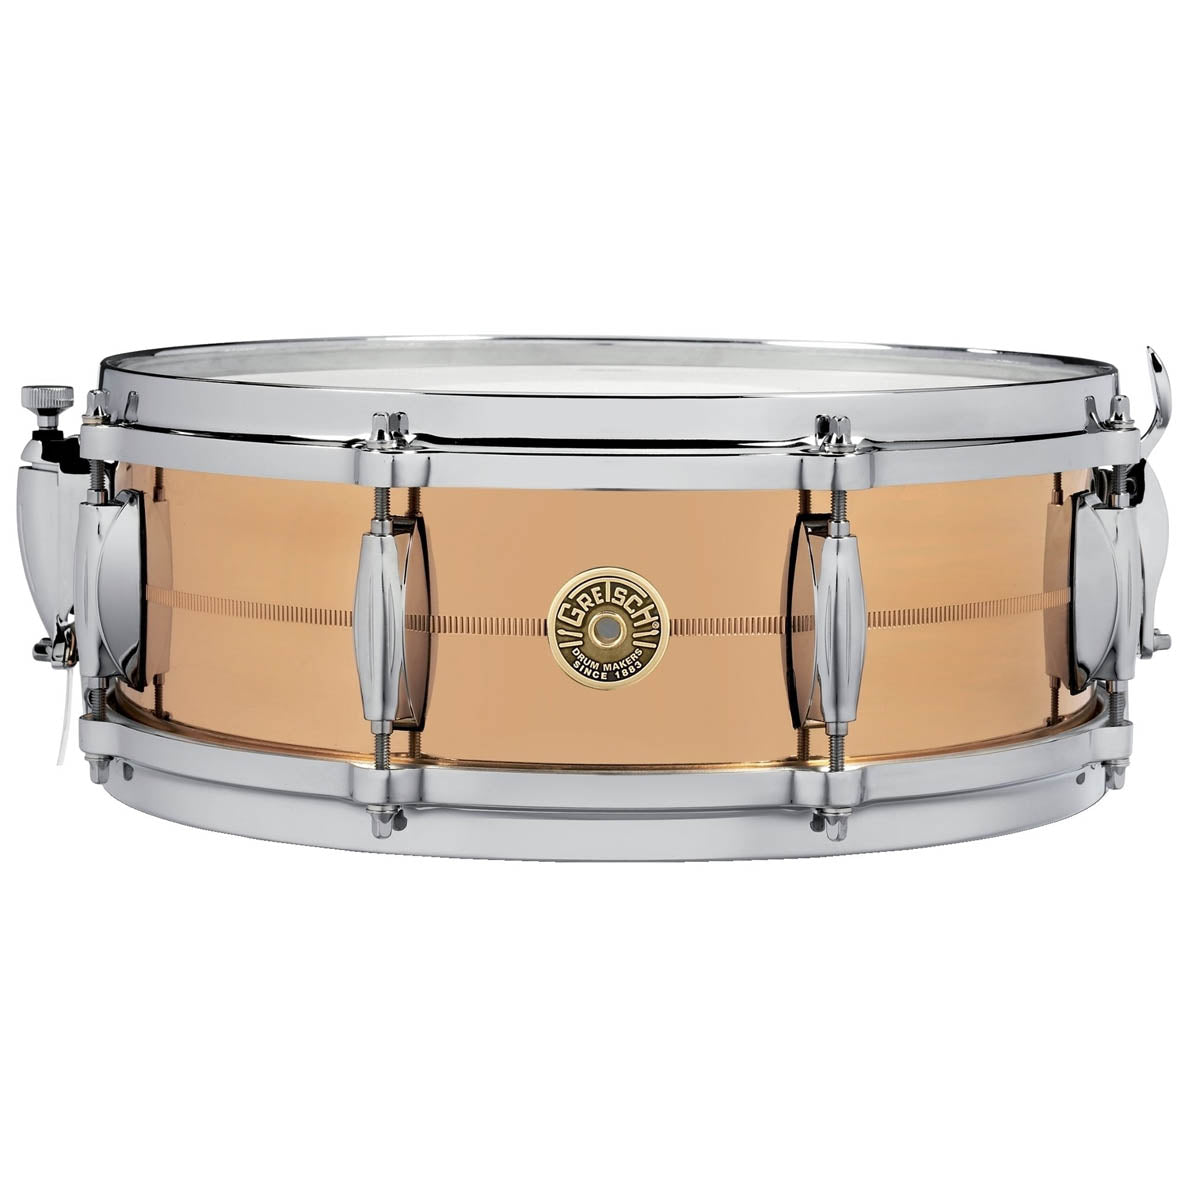 Gretsch USA Solid Phosphor Bronze 14"x5" Snare Drum